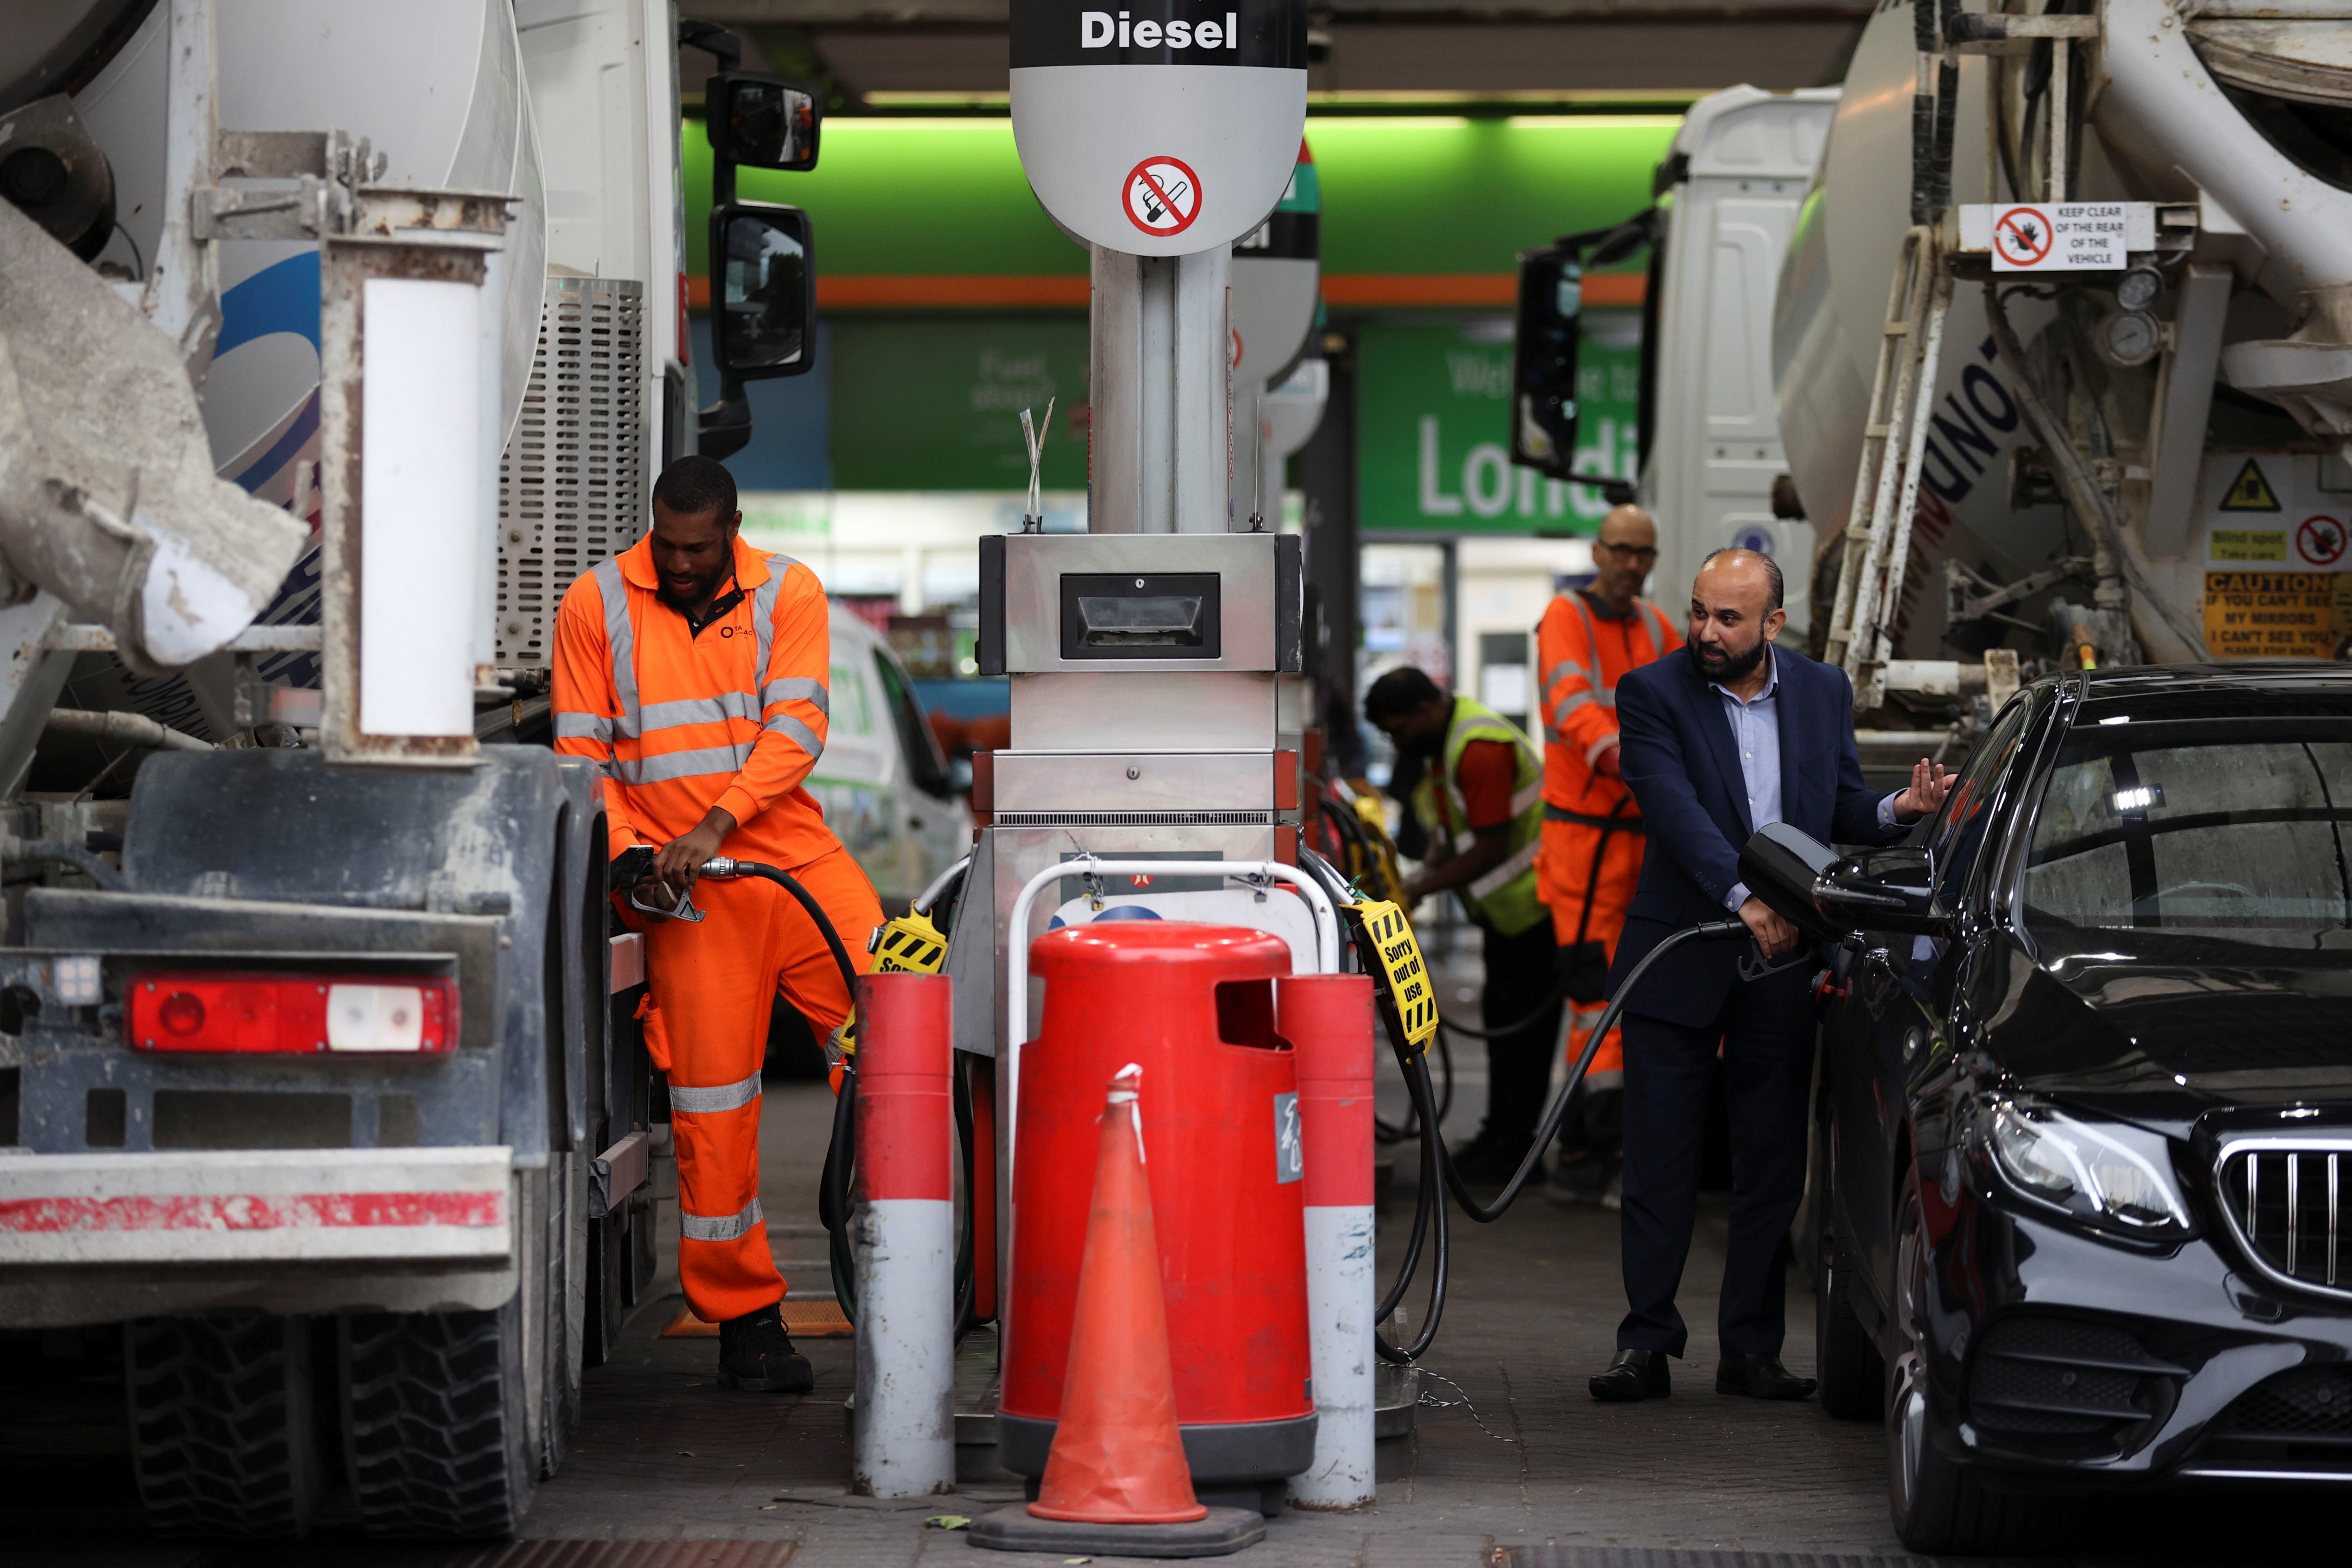 Fuel shortage, in London